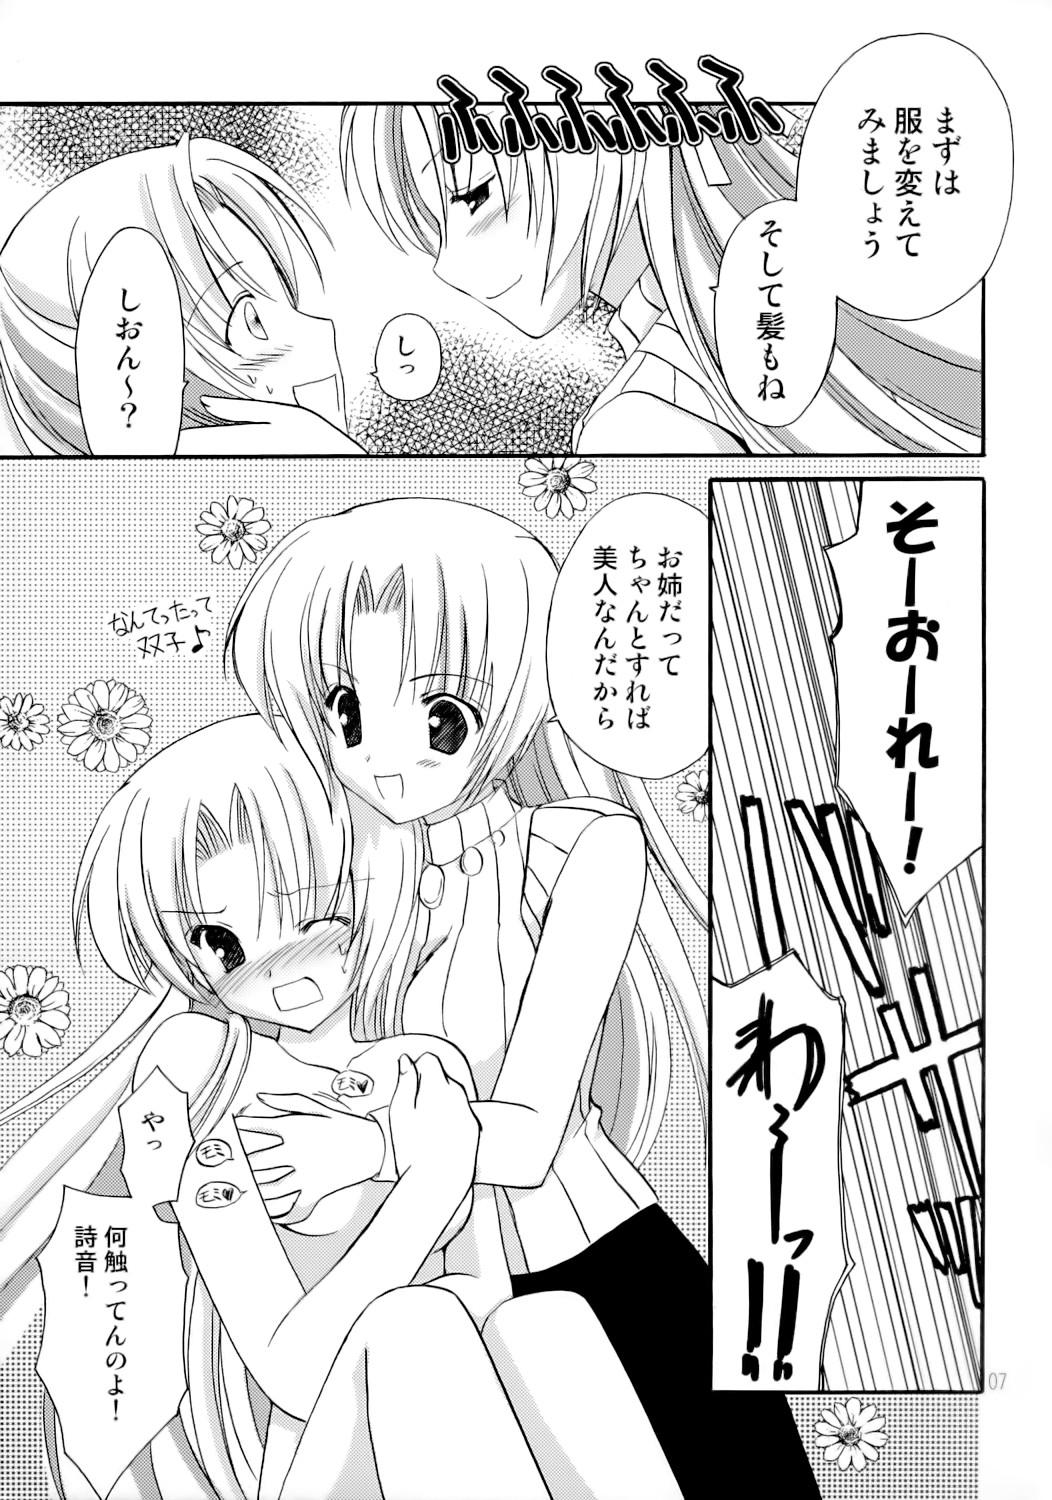 Lezdom TAKE OUT! - Higurashi no naku koro ni Romantic - Page 6